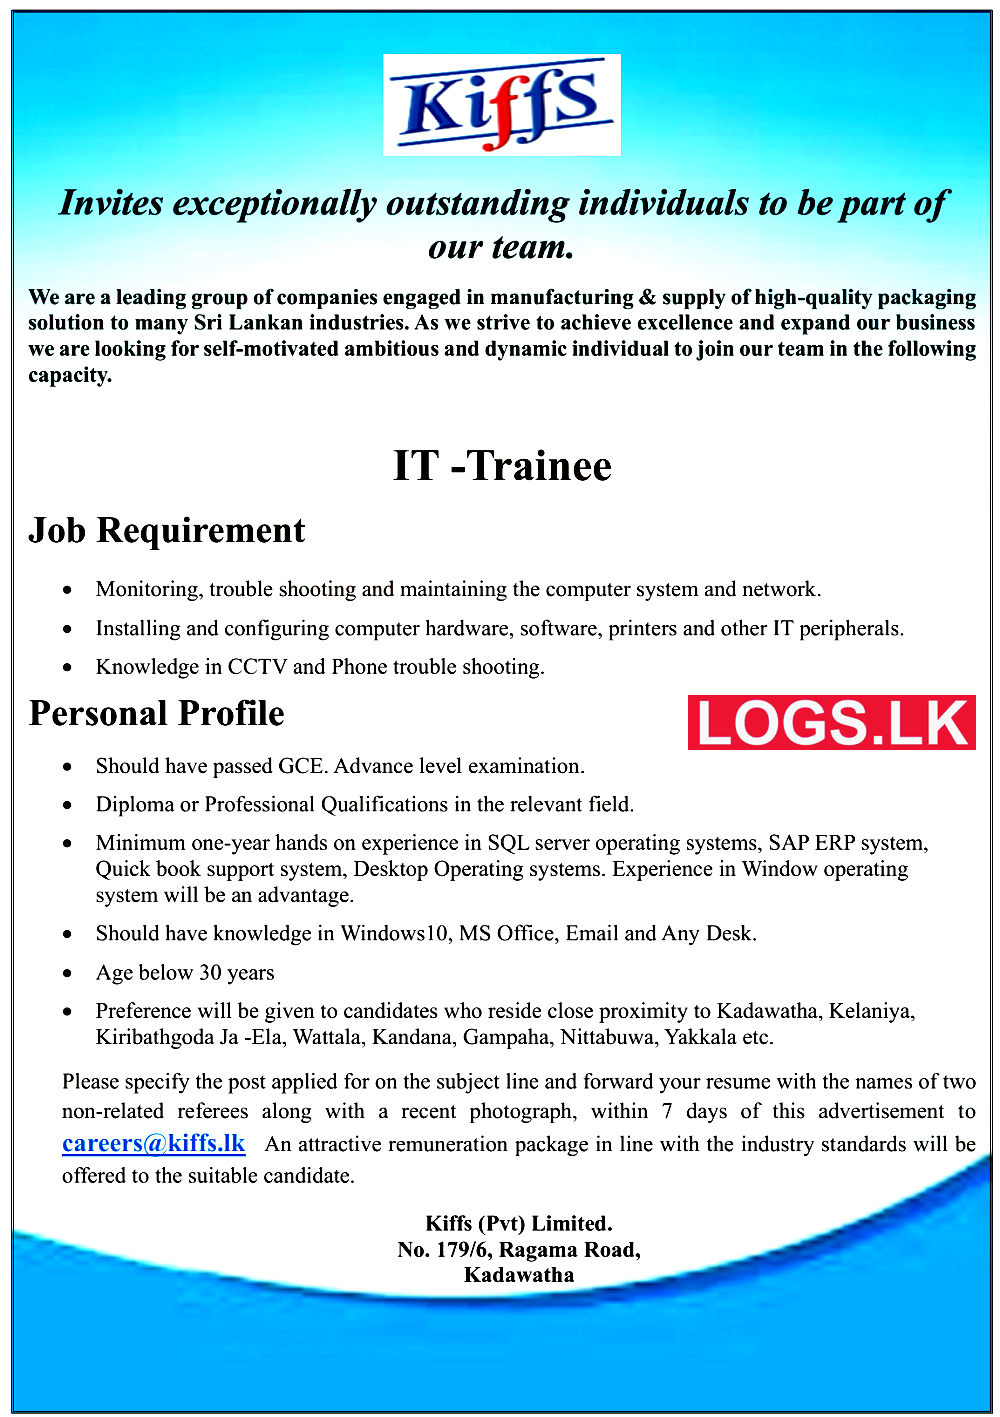 IT Trainee Job Vacancy at Kiffs (Pvt) Limited Company Sri Lanka